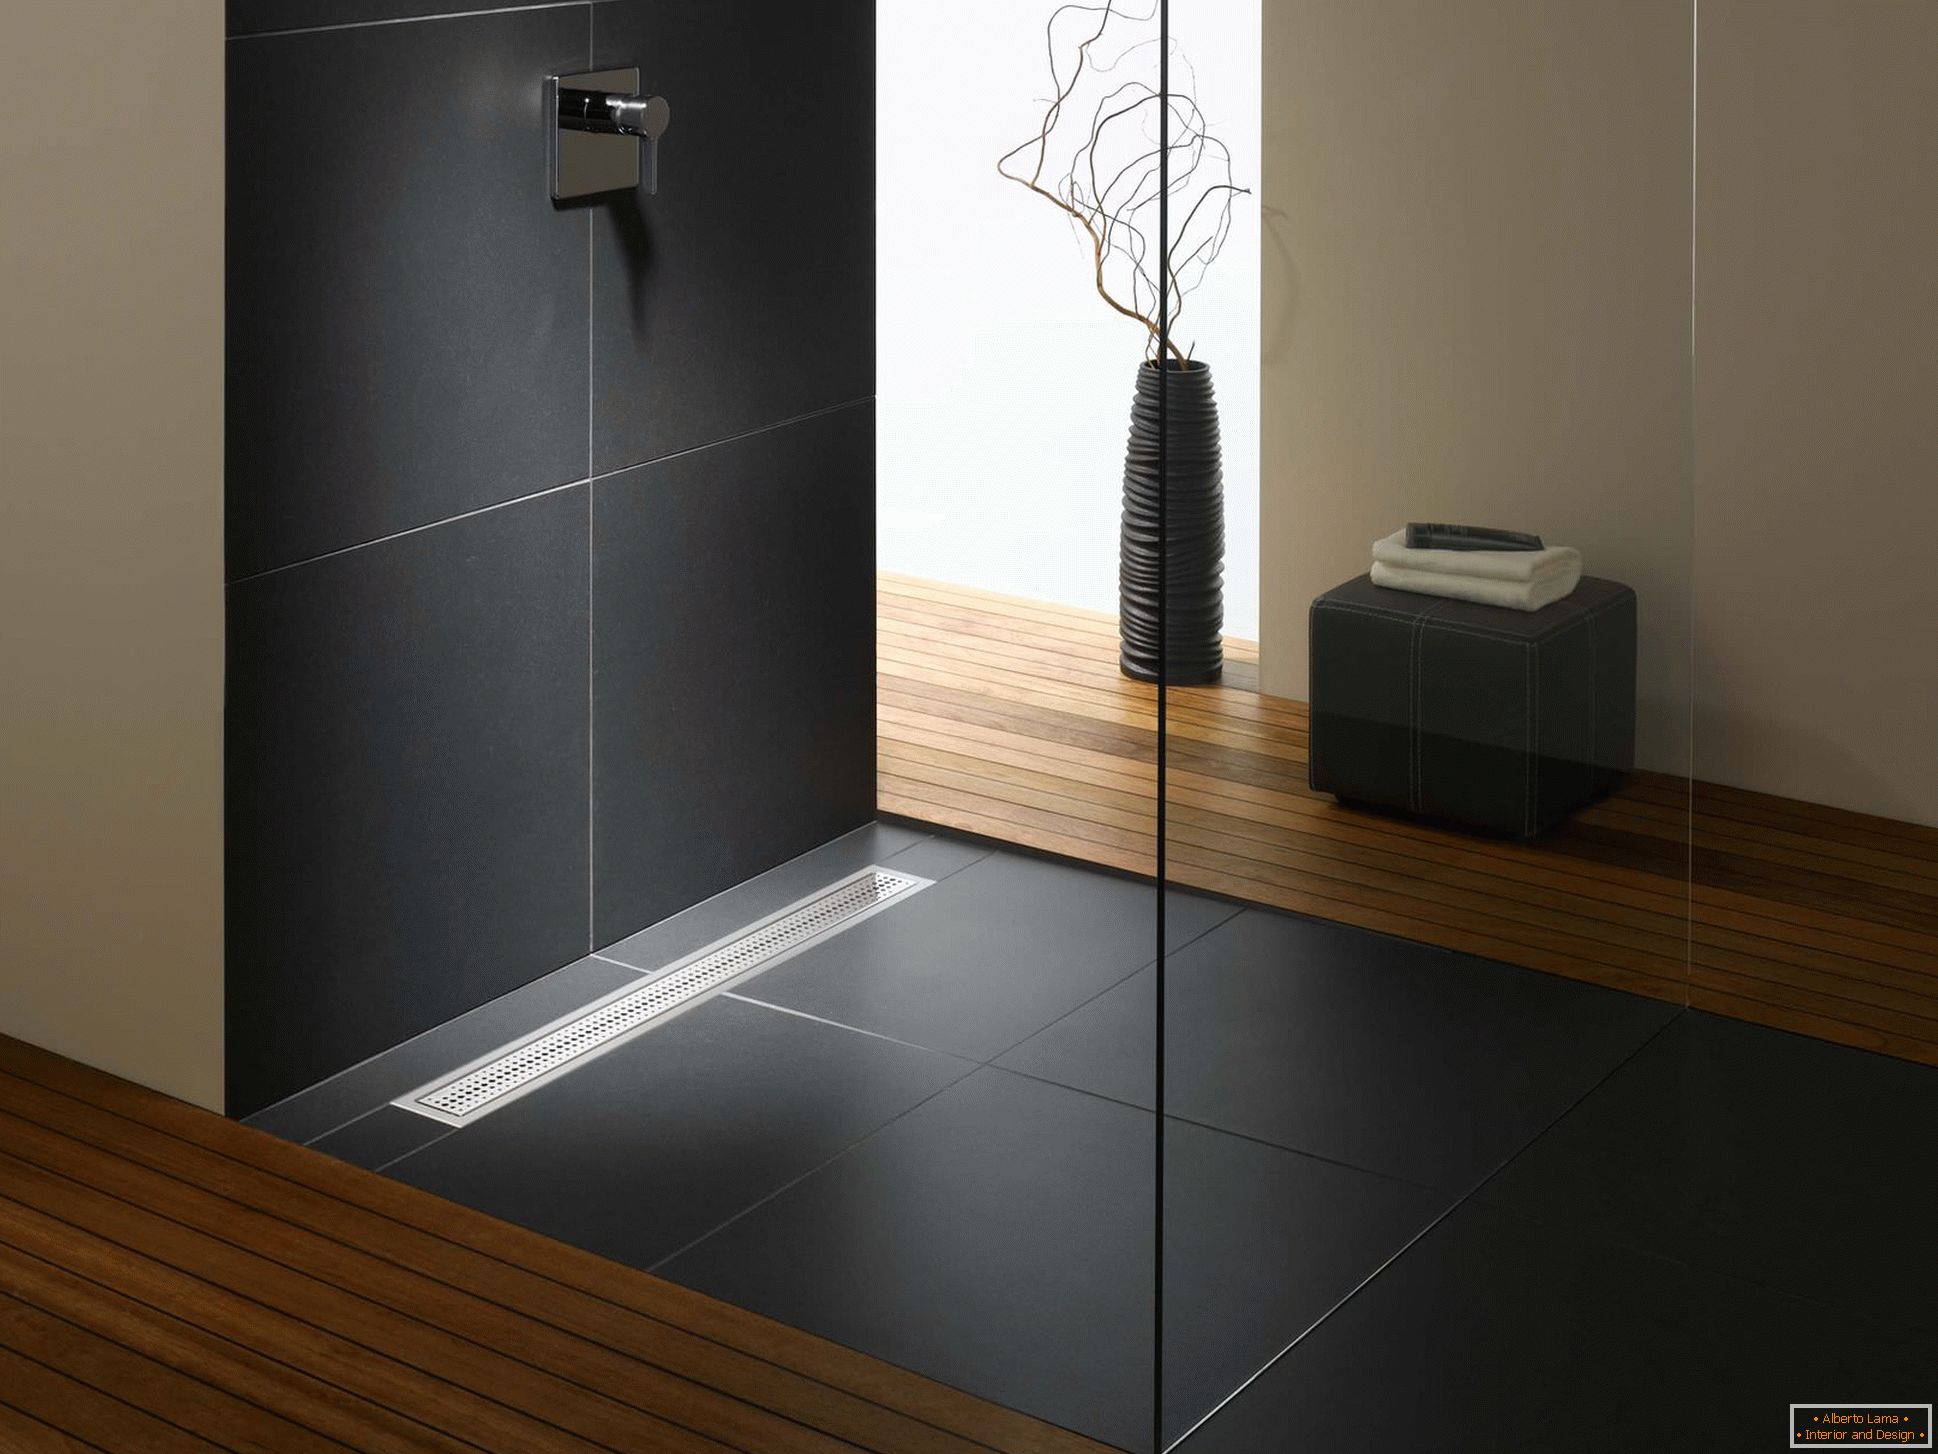 Sprchová kabina bez palety v designu moderního bytu